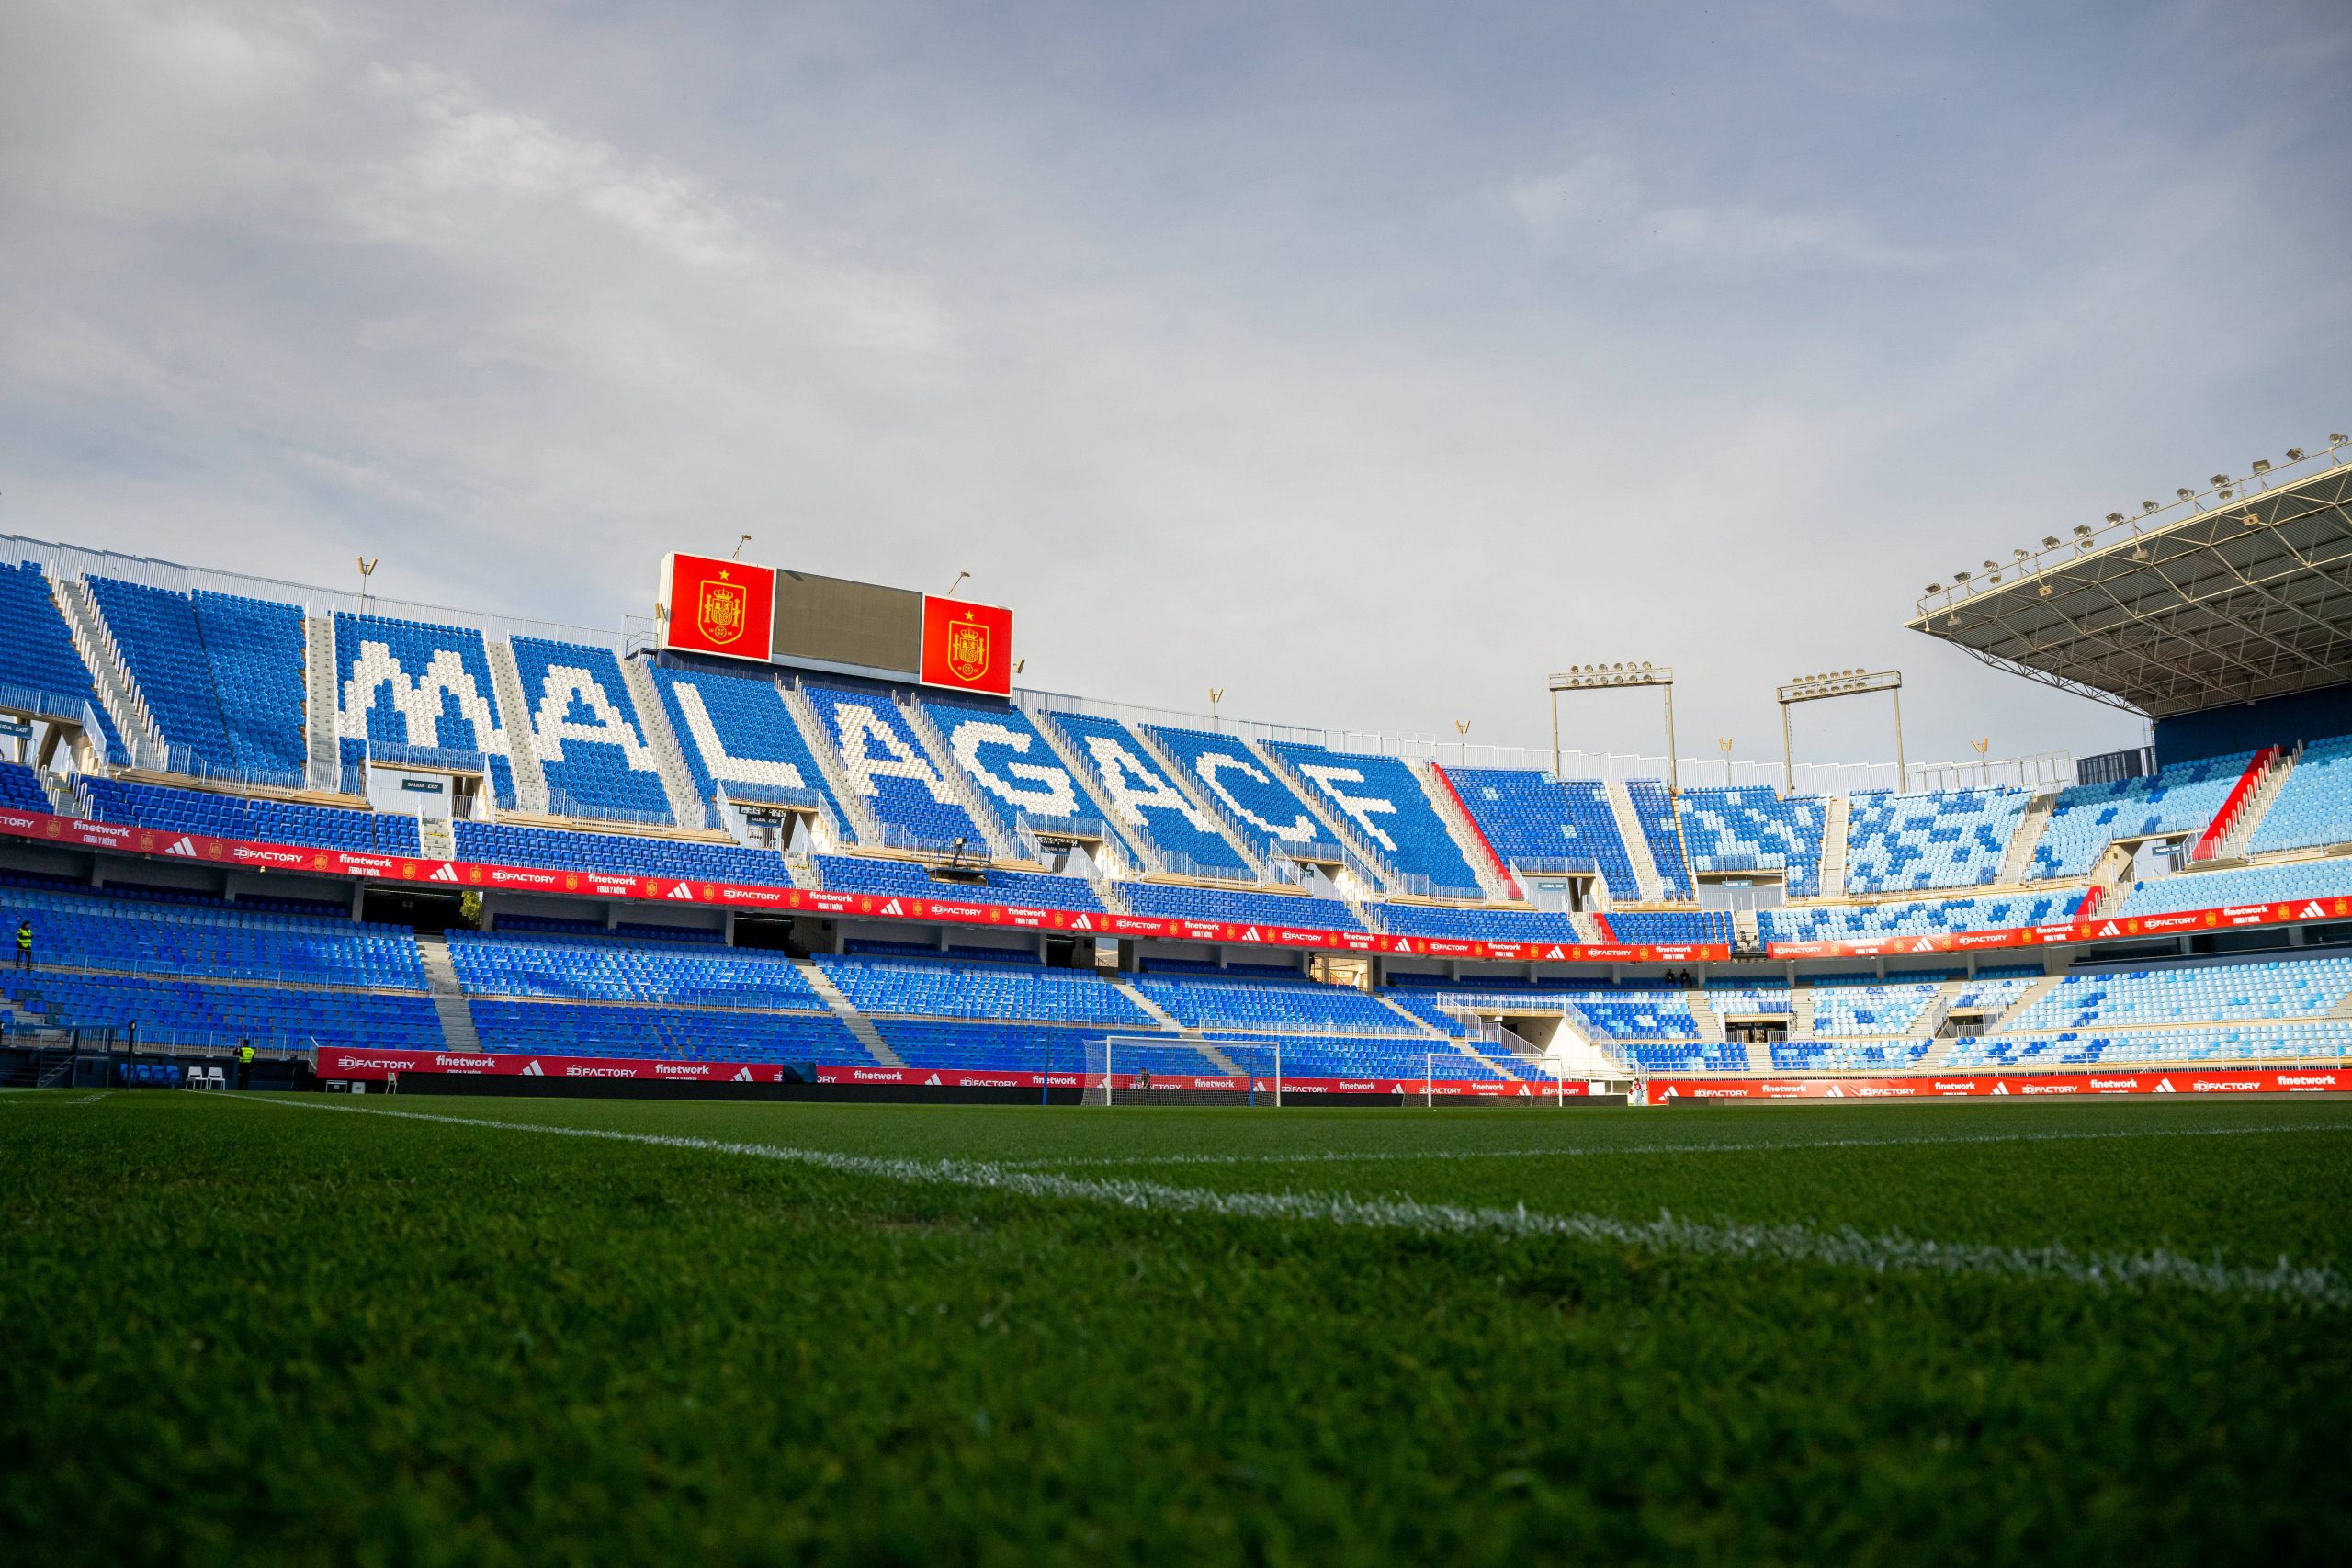 Malaga Stadium, La Roselada